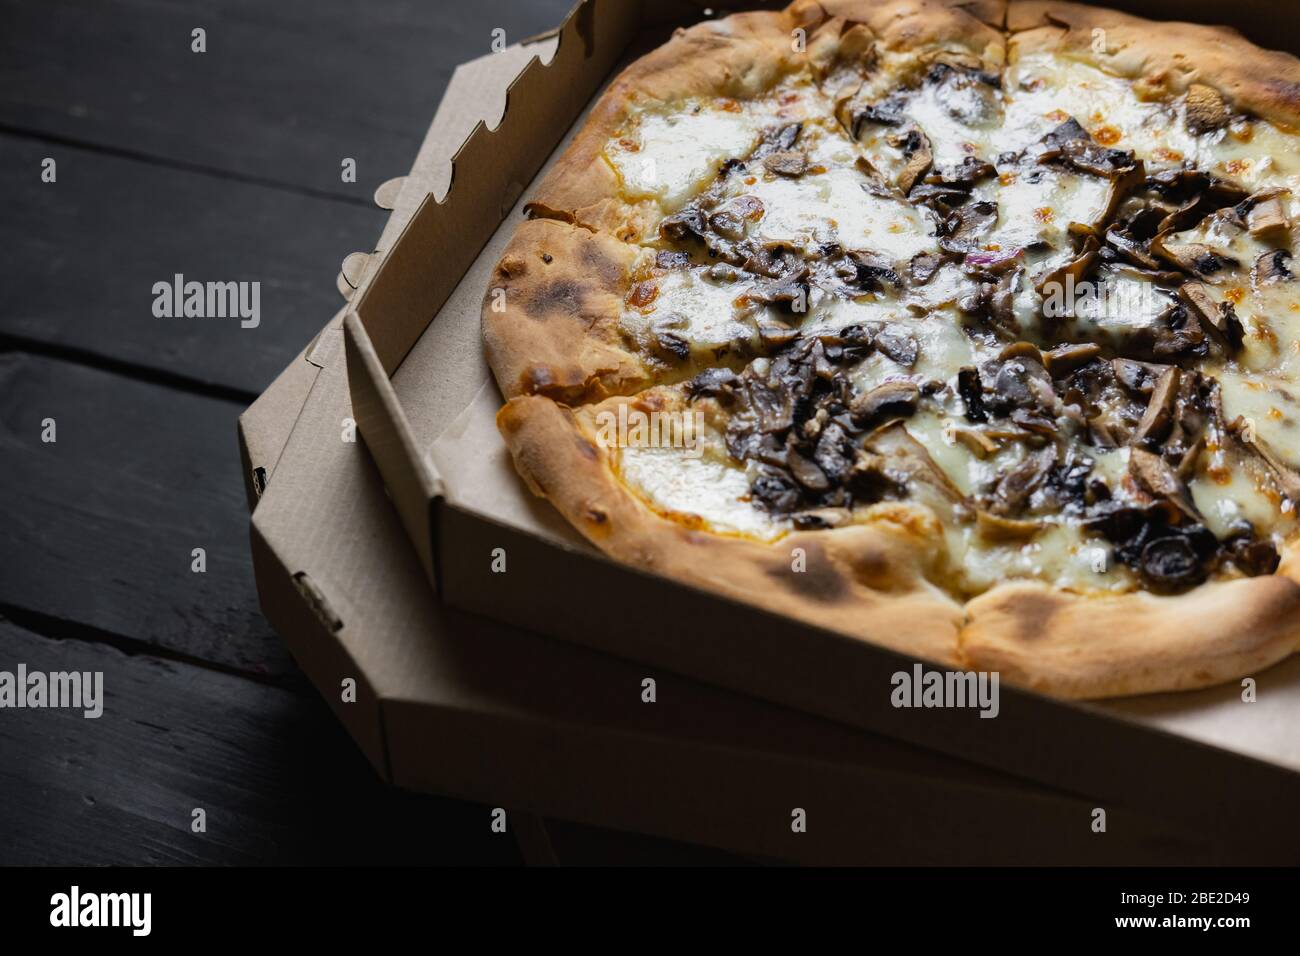 Pizza funghi dans une boîte de livraison ouverte. Alimentation à emporter, concept de nourriture à emporter : pieu de pizzas aux champignons dans des boîtes sur fond de bois noir Banque D'Images